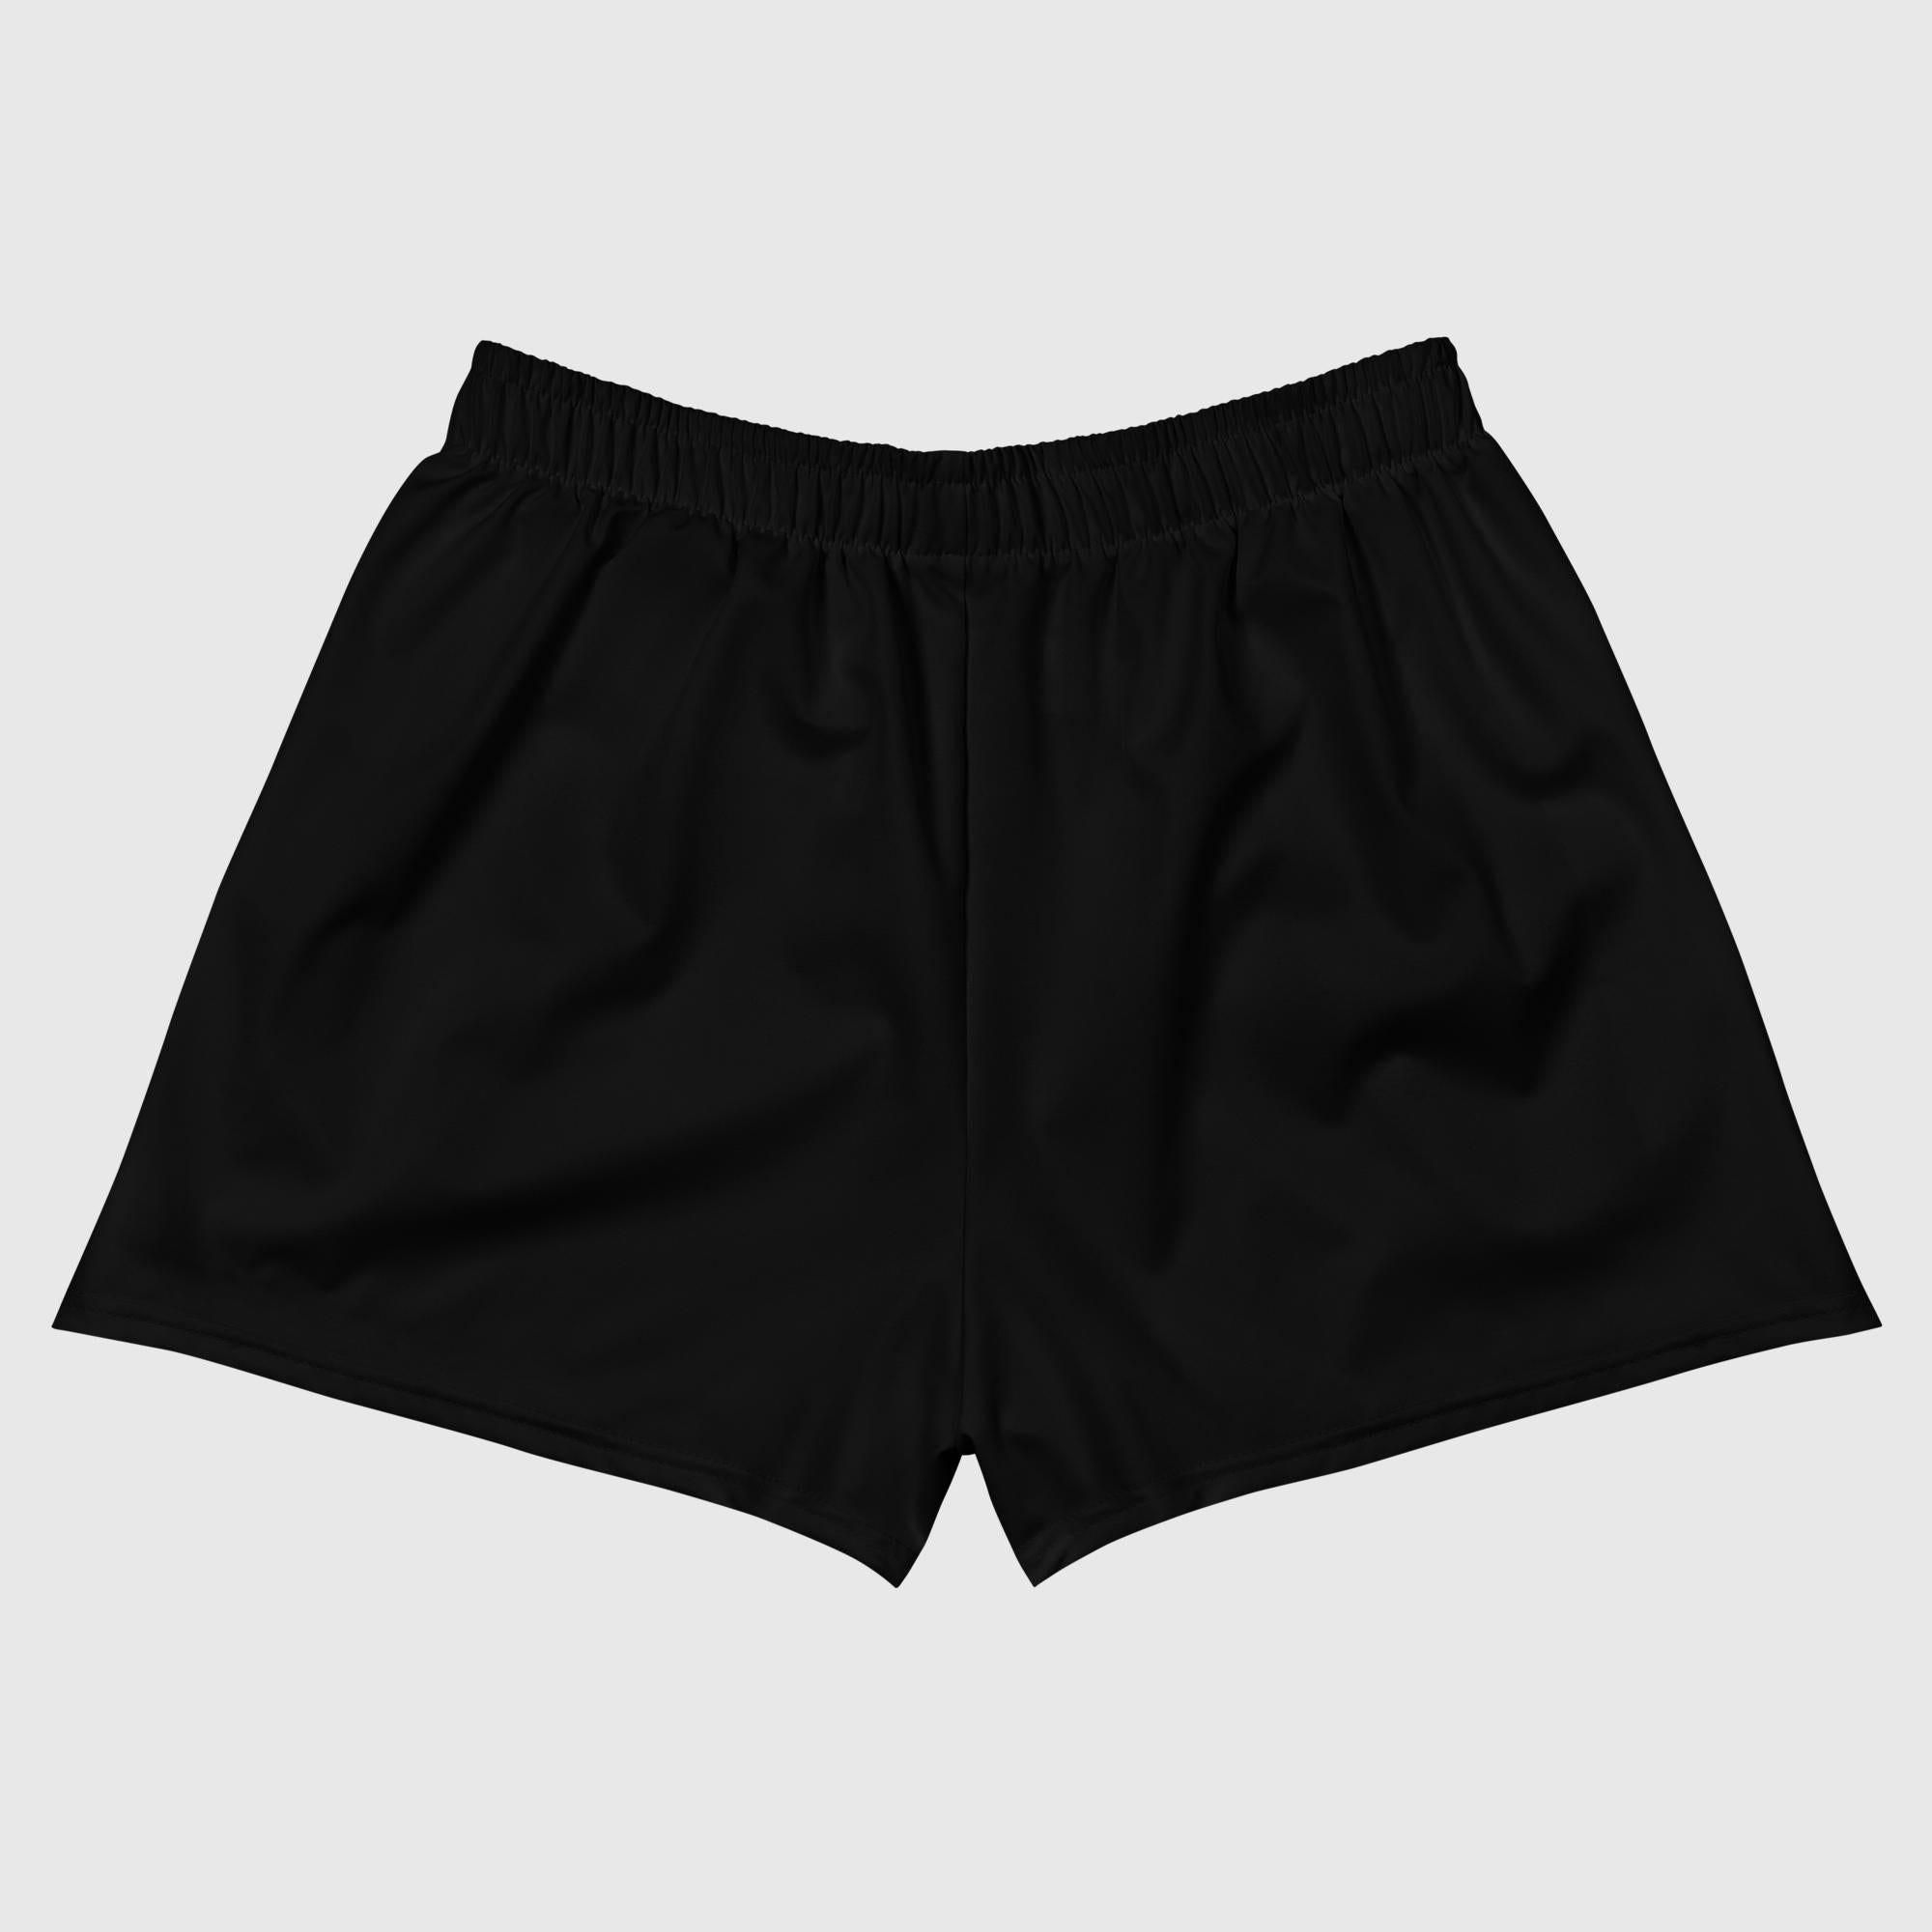 Sportliche kurze Shorts für Damen – Schwarz